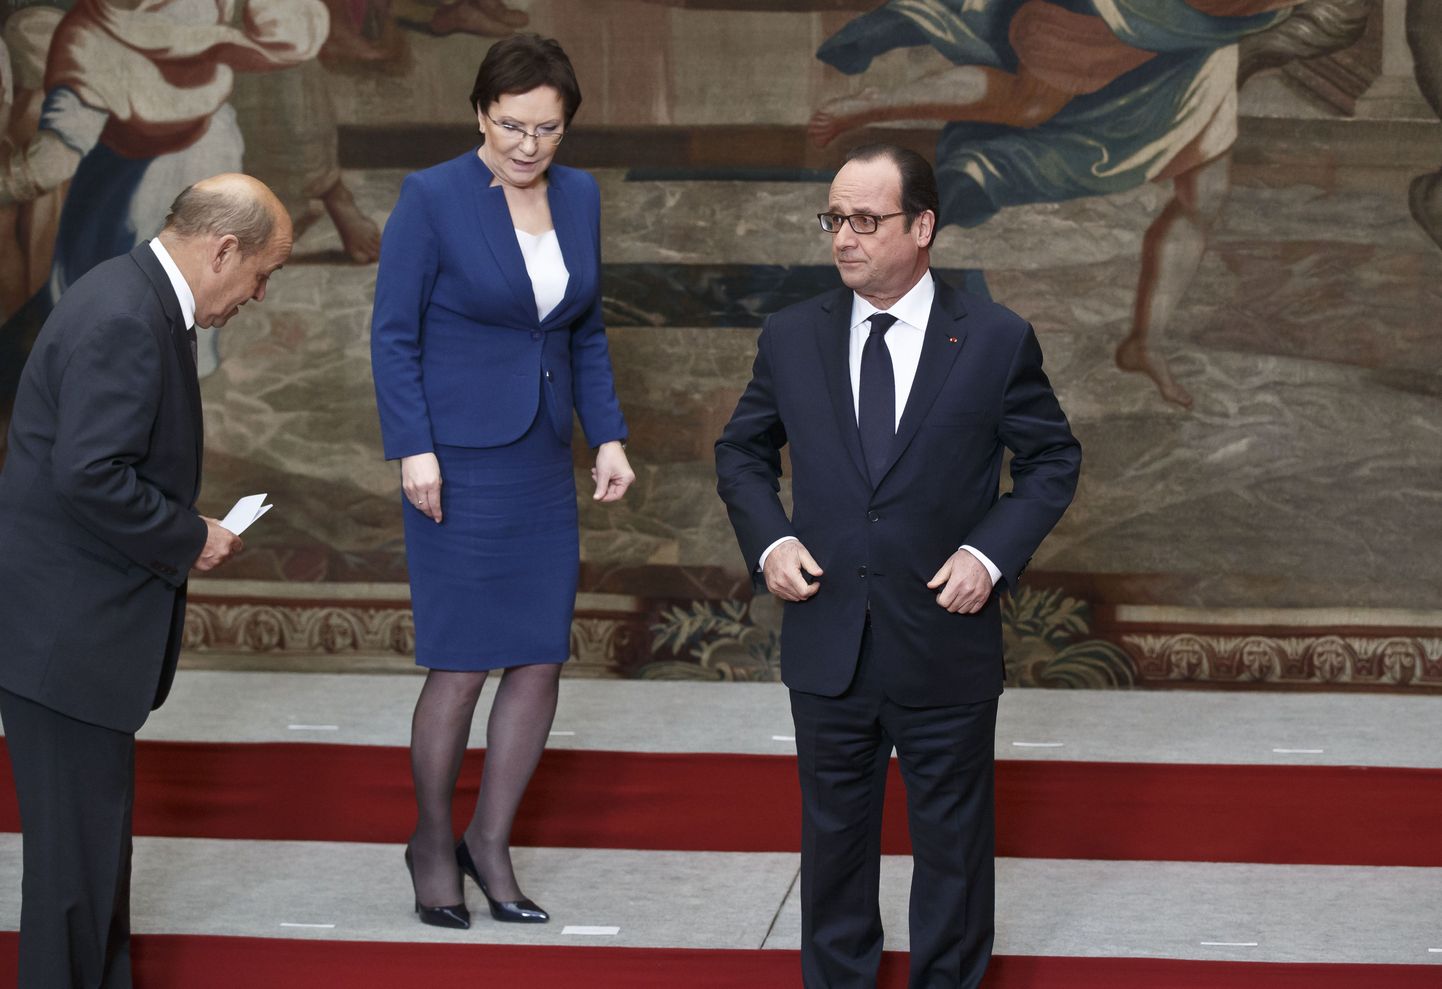 Prantsuse kaitseminister Jean-Yves Le Drian (vasakul) otsib koos Poola peaministri Ewa Kopacziga kohta, kuhu seista Élysée palees enne grupipildi tegemist. Prantsusmaa president François Hollande on oma koha juba sisse võtnud.